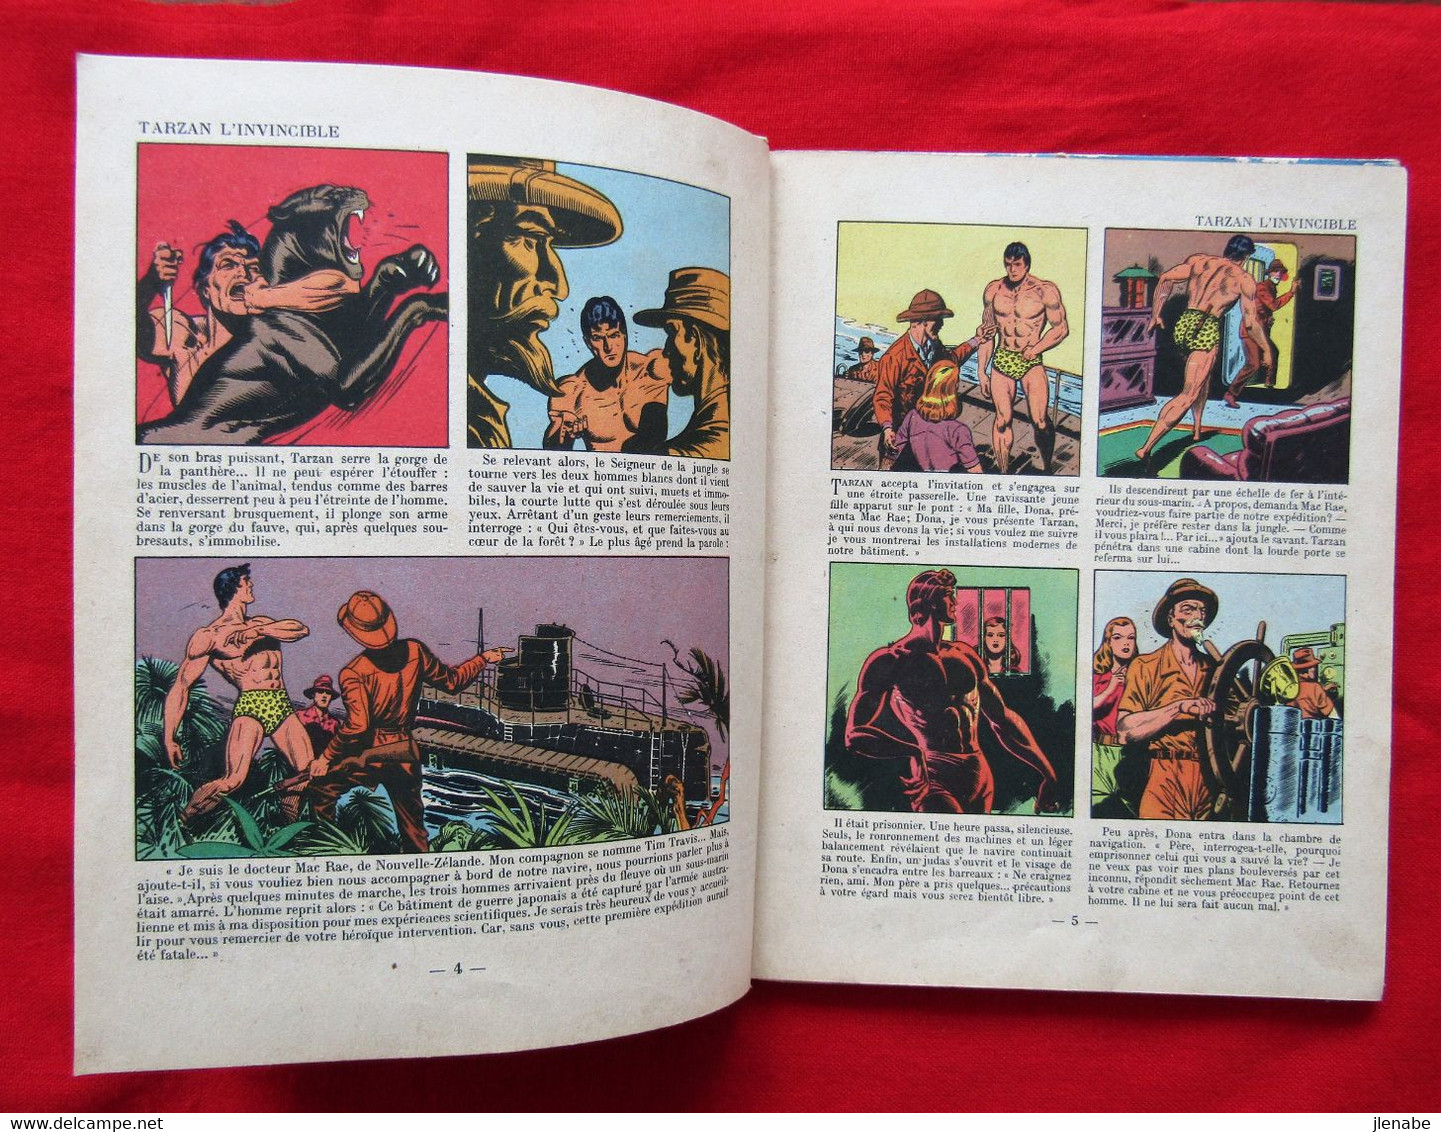 TARZAN L'INVINCIBLE Edition Originale de 1949 par HOGARTH